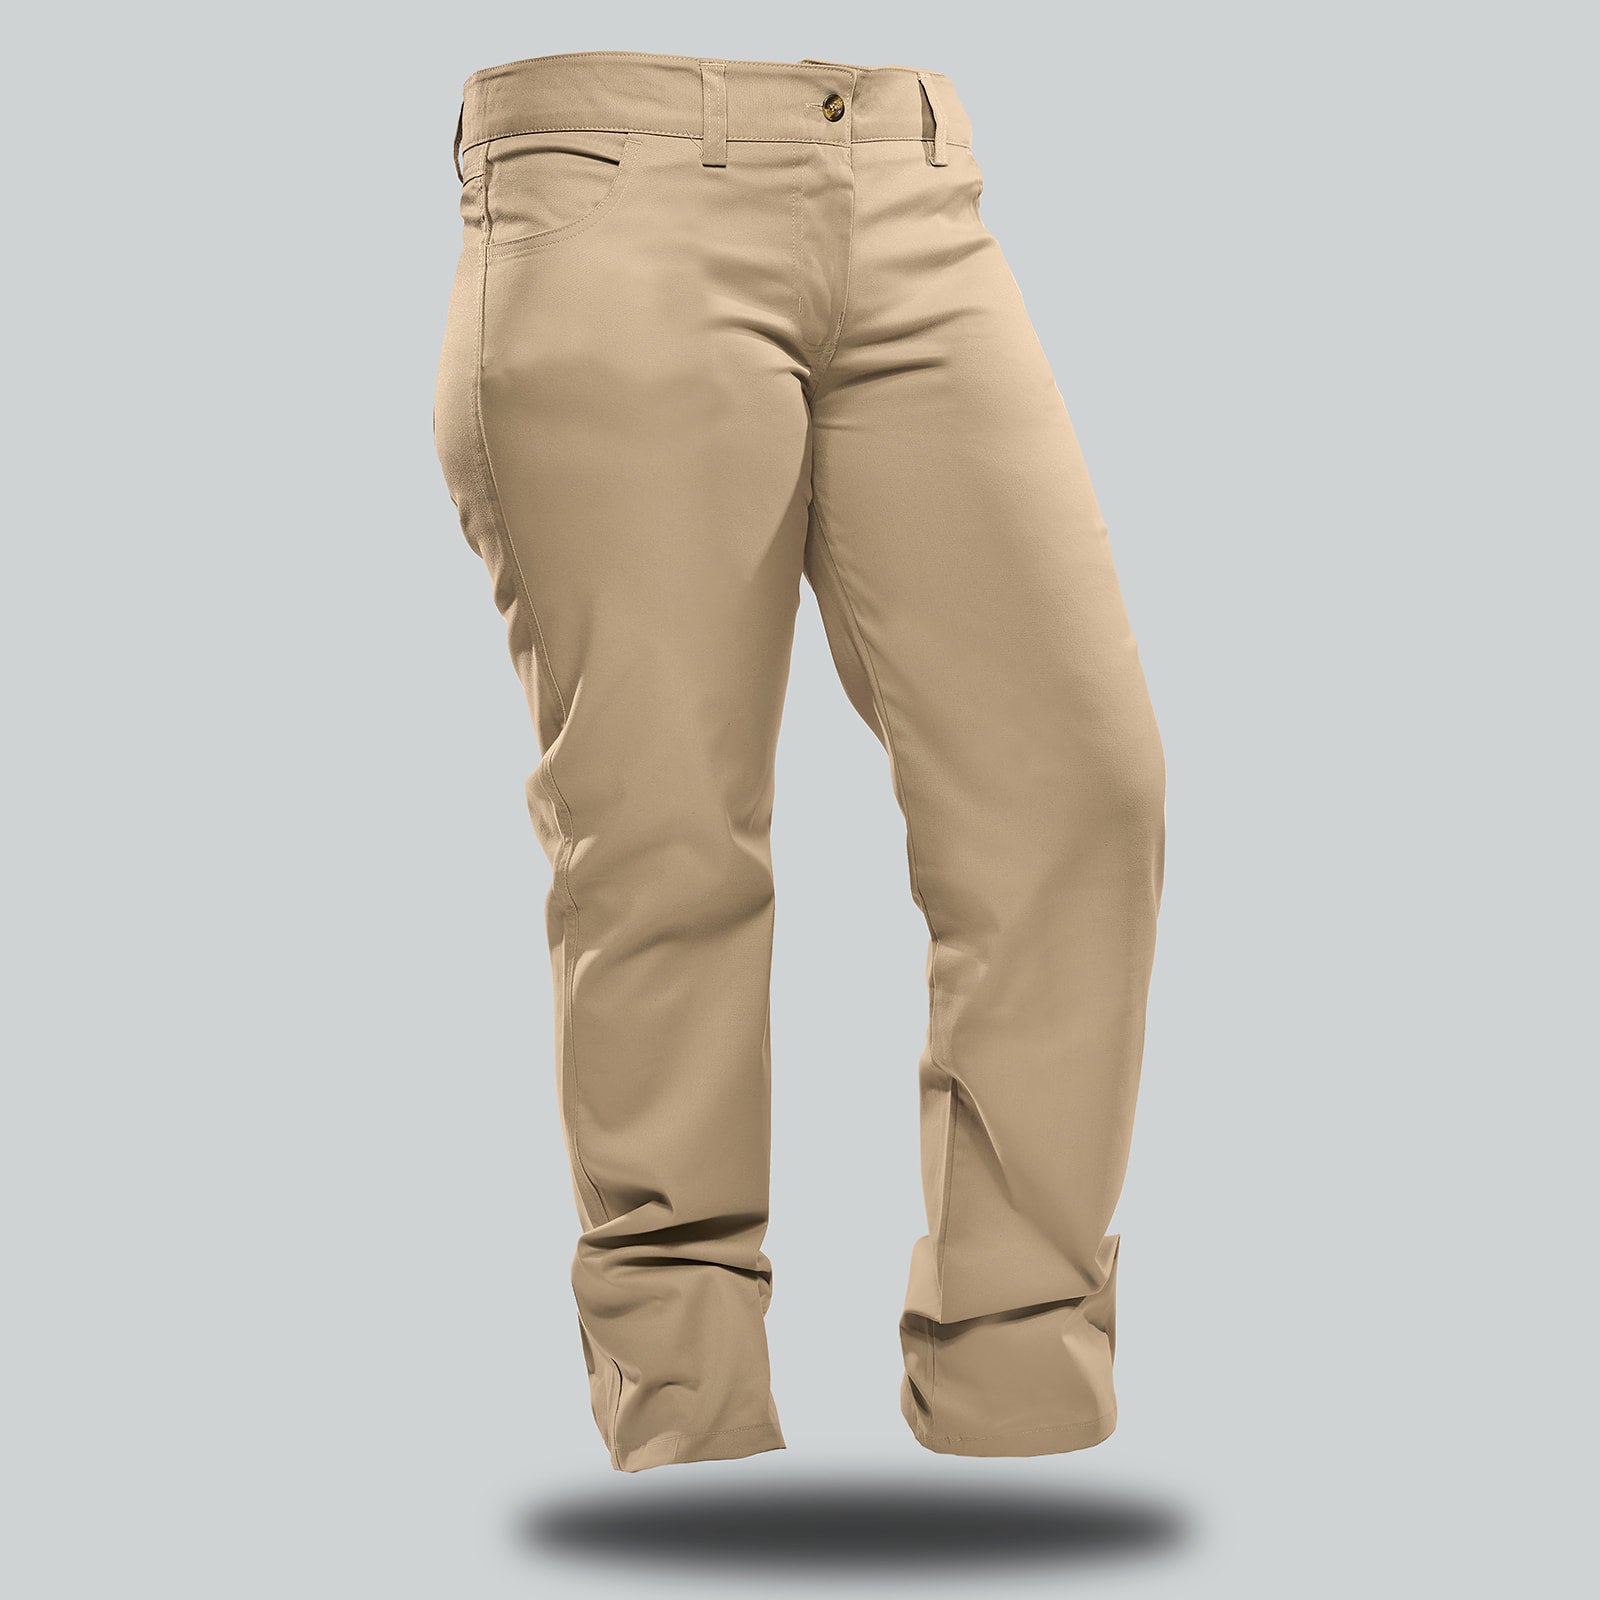 Plover Jean Style Pants - Ladies